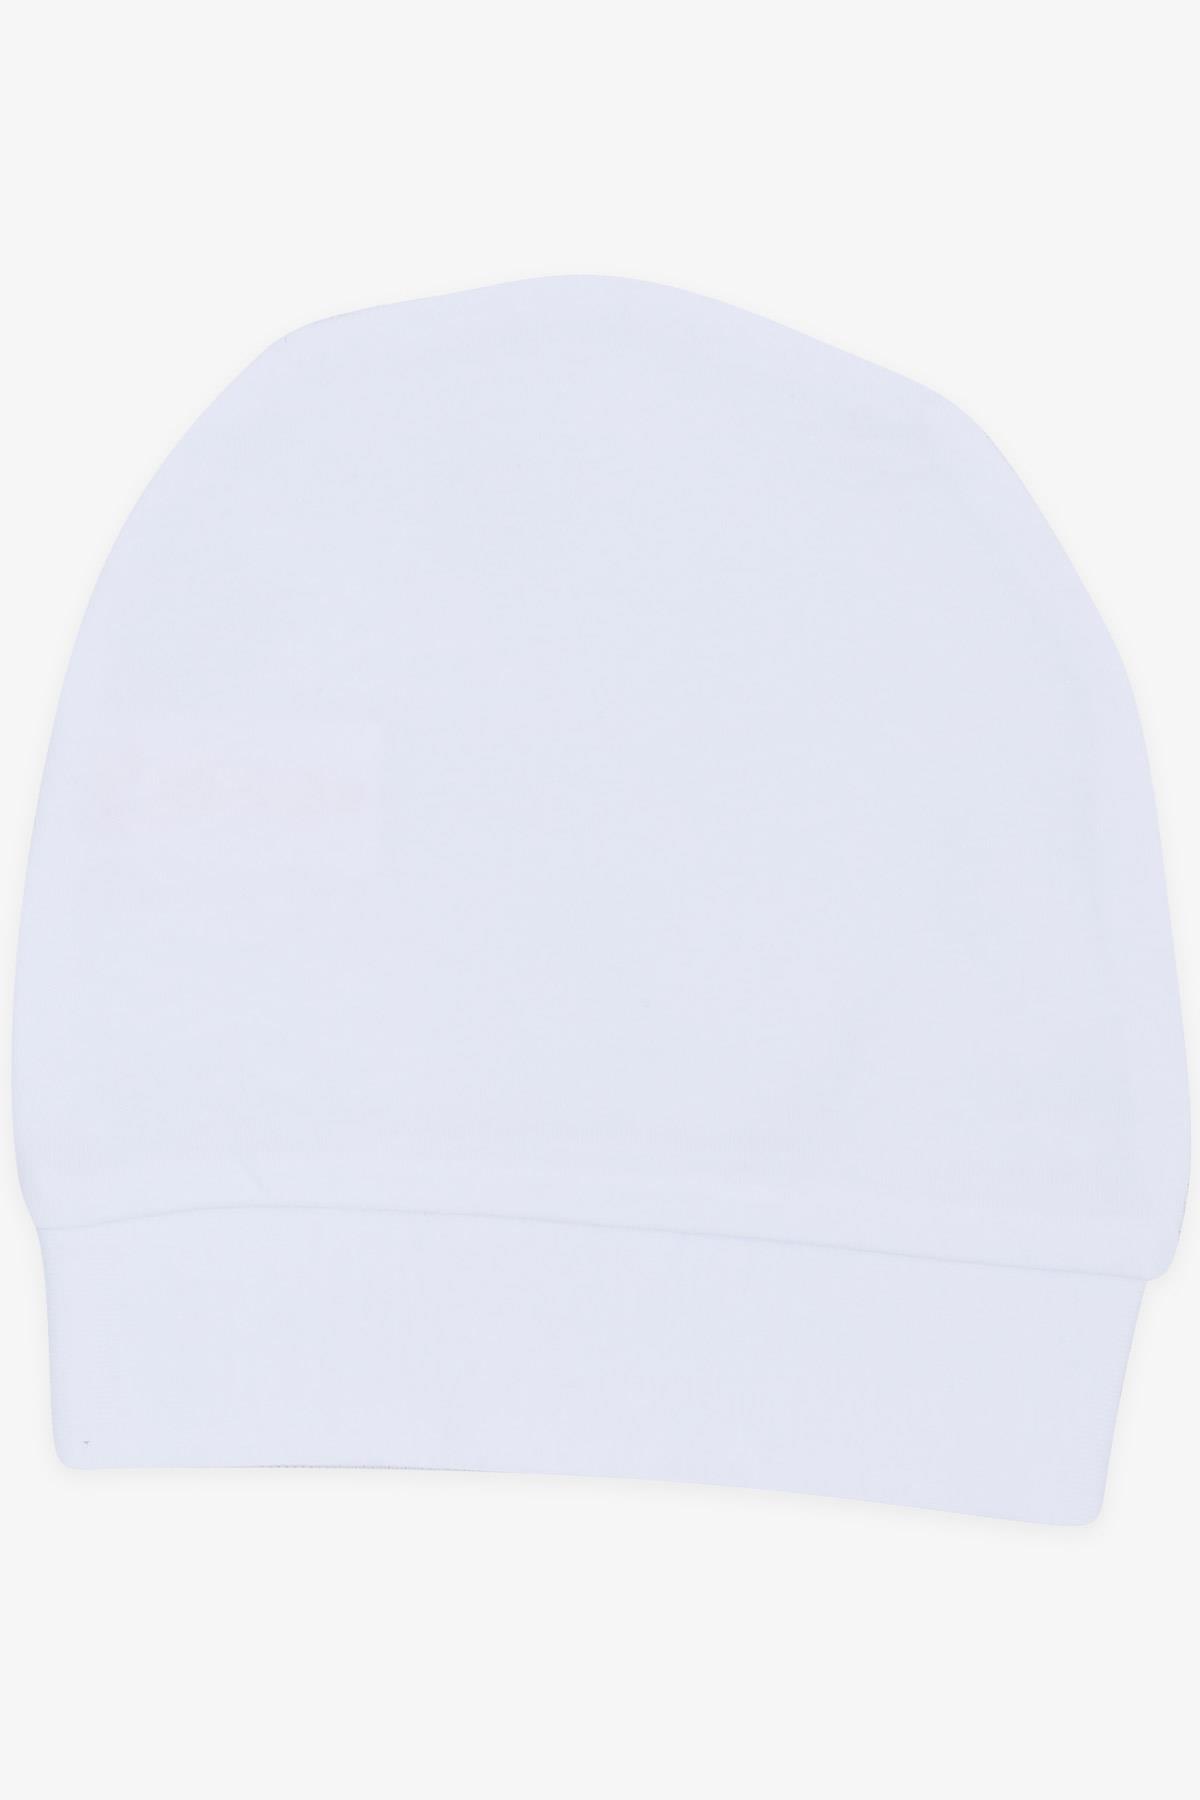 Yenidoğan Bebek Şapkası Beyaz - Minik Bebek Şapka Modelleri | Breeze